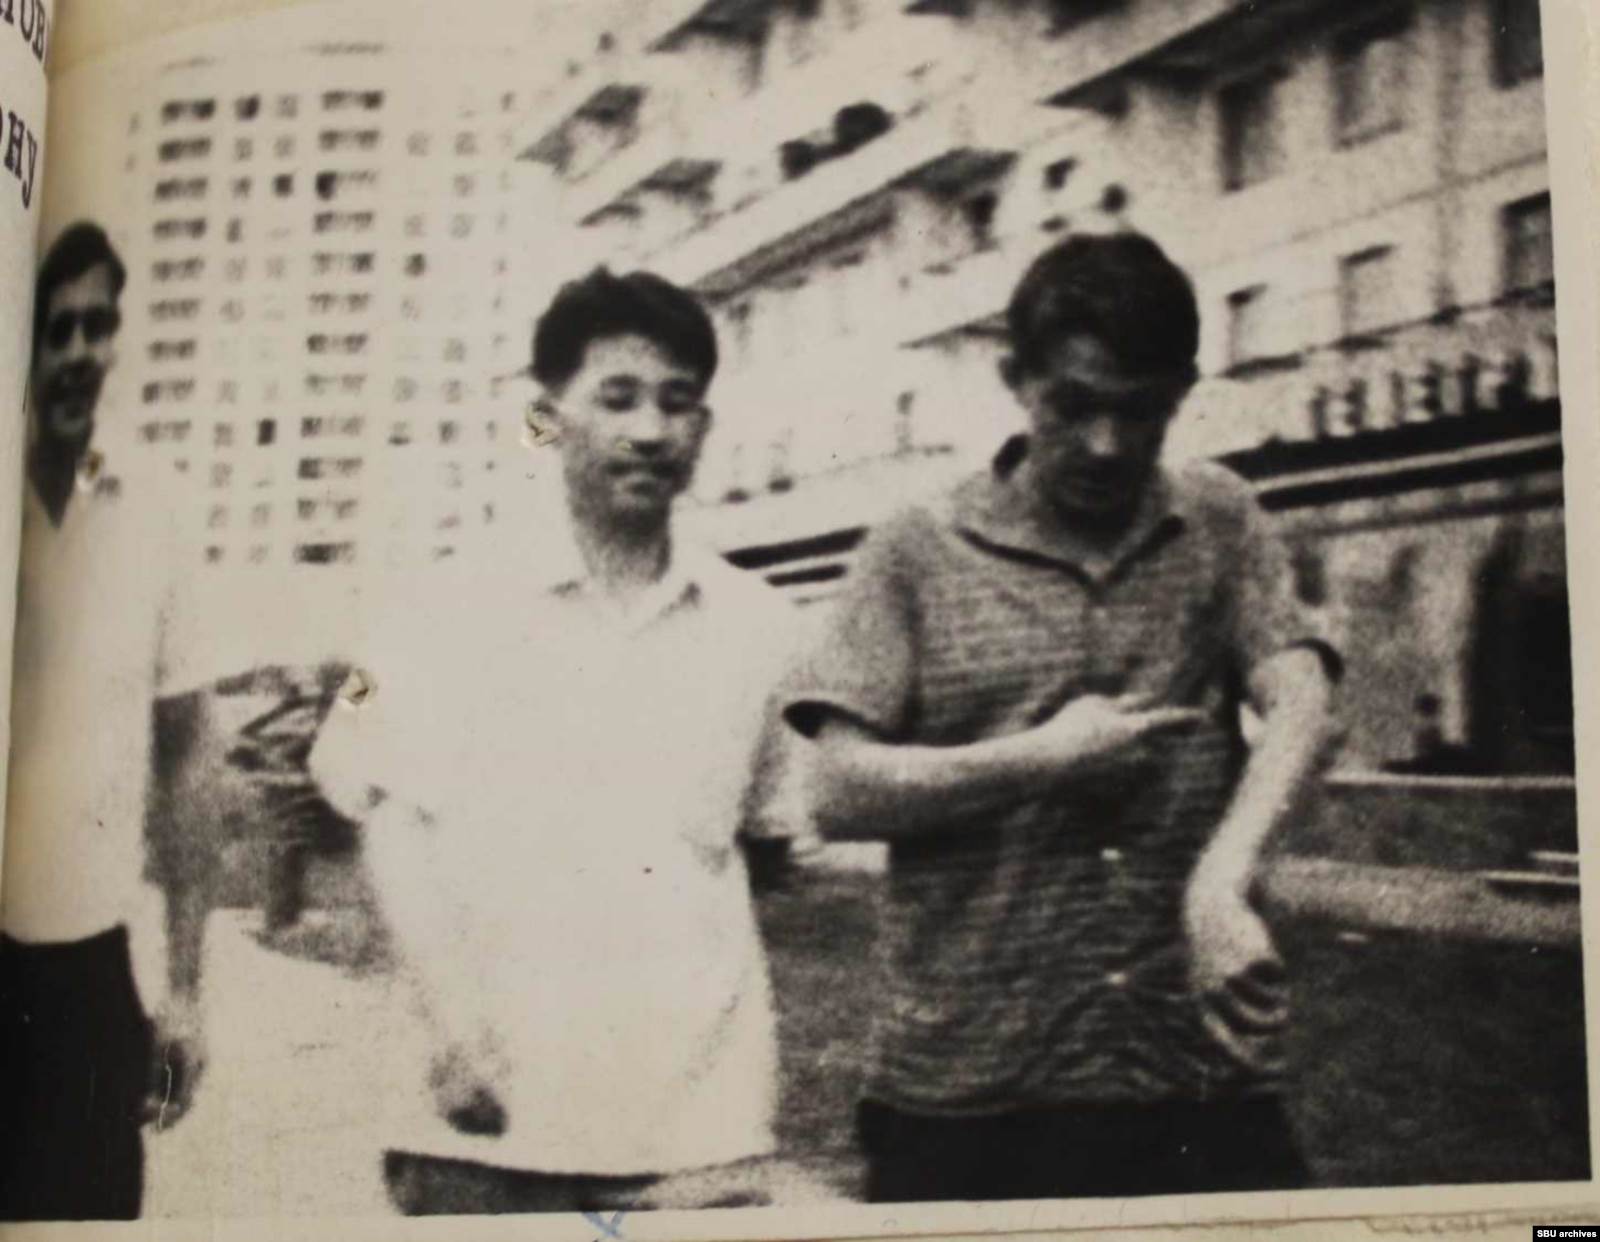 Справа Пушкарь, в центре Пак, а слева, вероятно, Наумов («Иванов»). Фото КГБ, сделанное скрытой камерой. Из оперативного дела